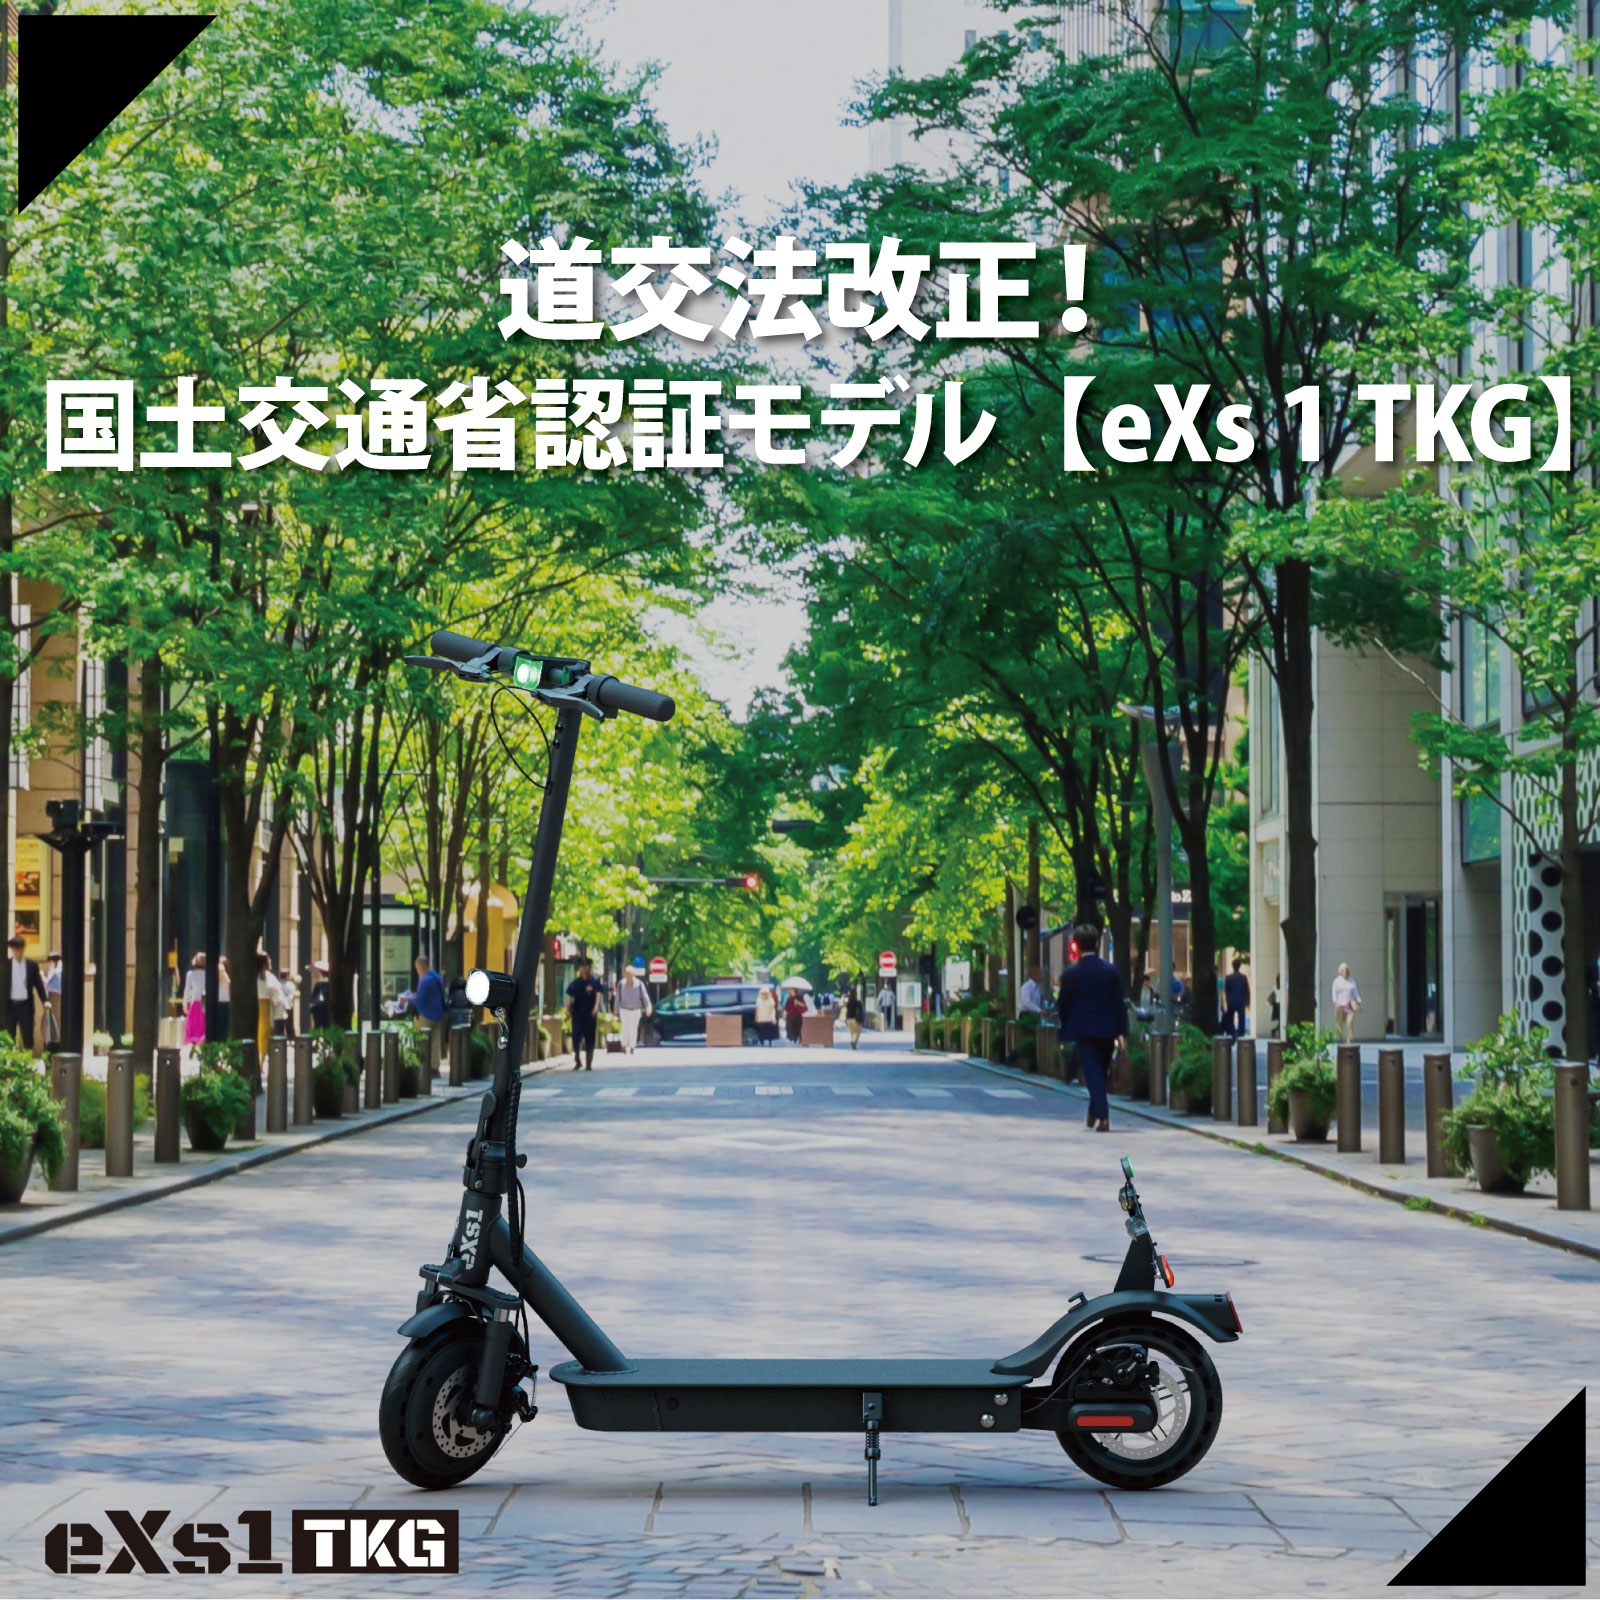 電動キックボード eXs 1 TKG(エクスワン 特定小型原付)